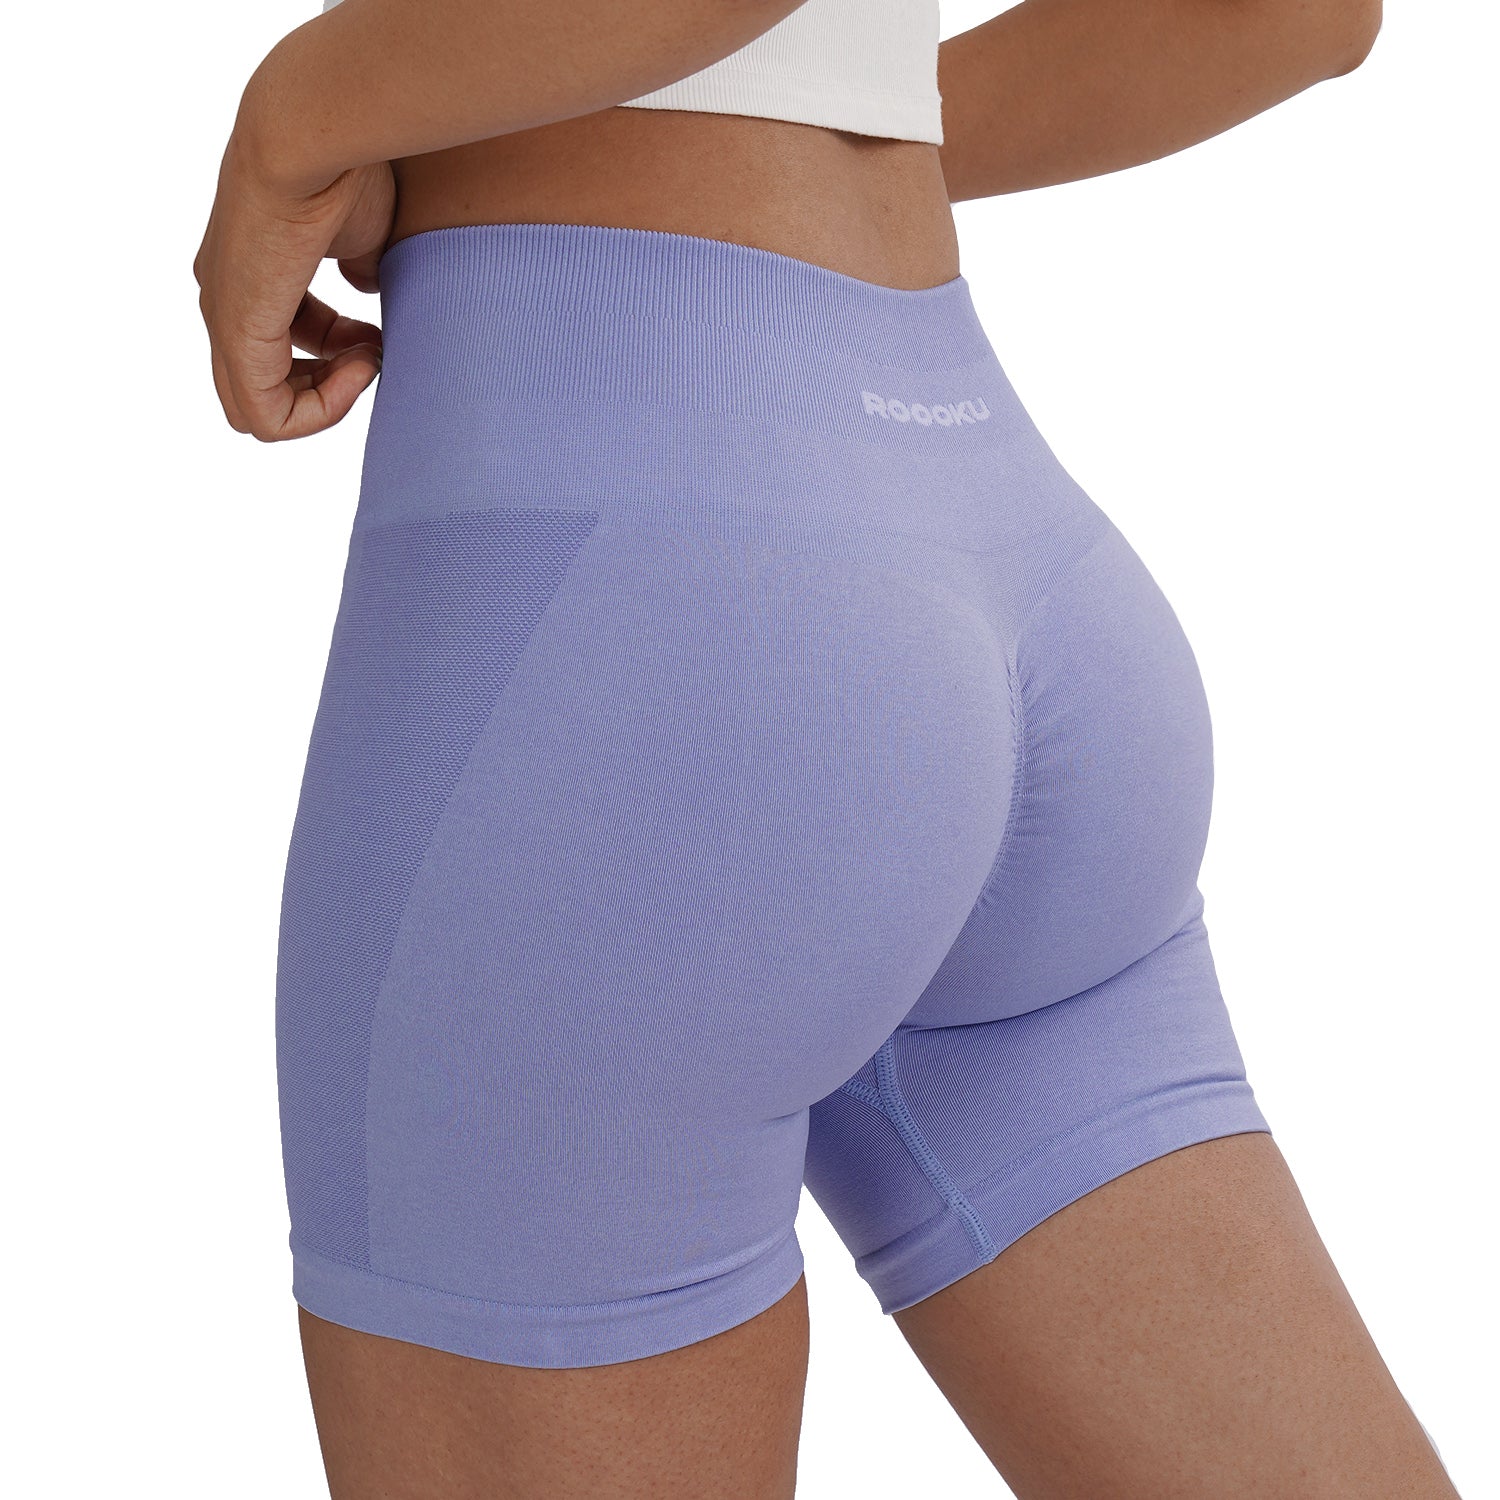  Scrunch Butt Lifting Shorts For Women Gym Workout